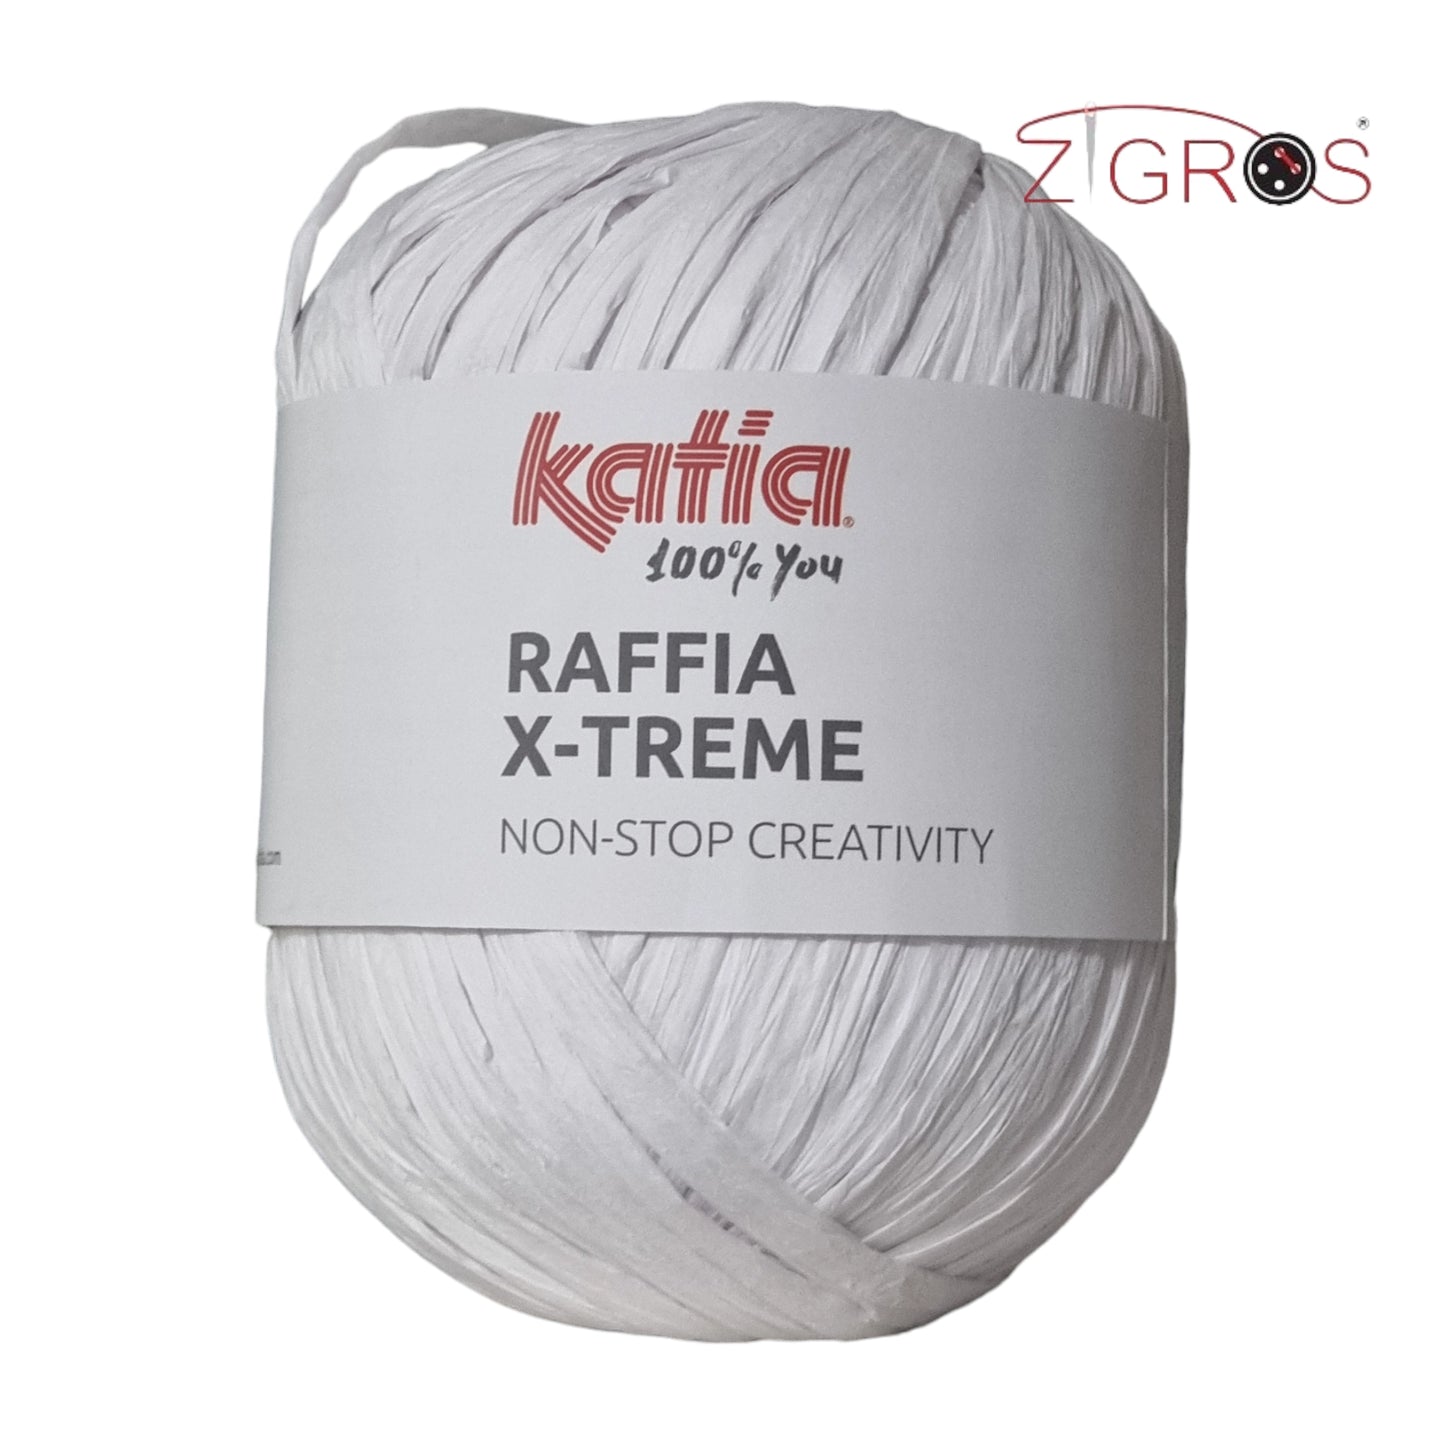 Raffia X-Treme By Katia Gomitolo da 100 grammi